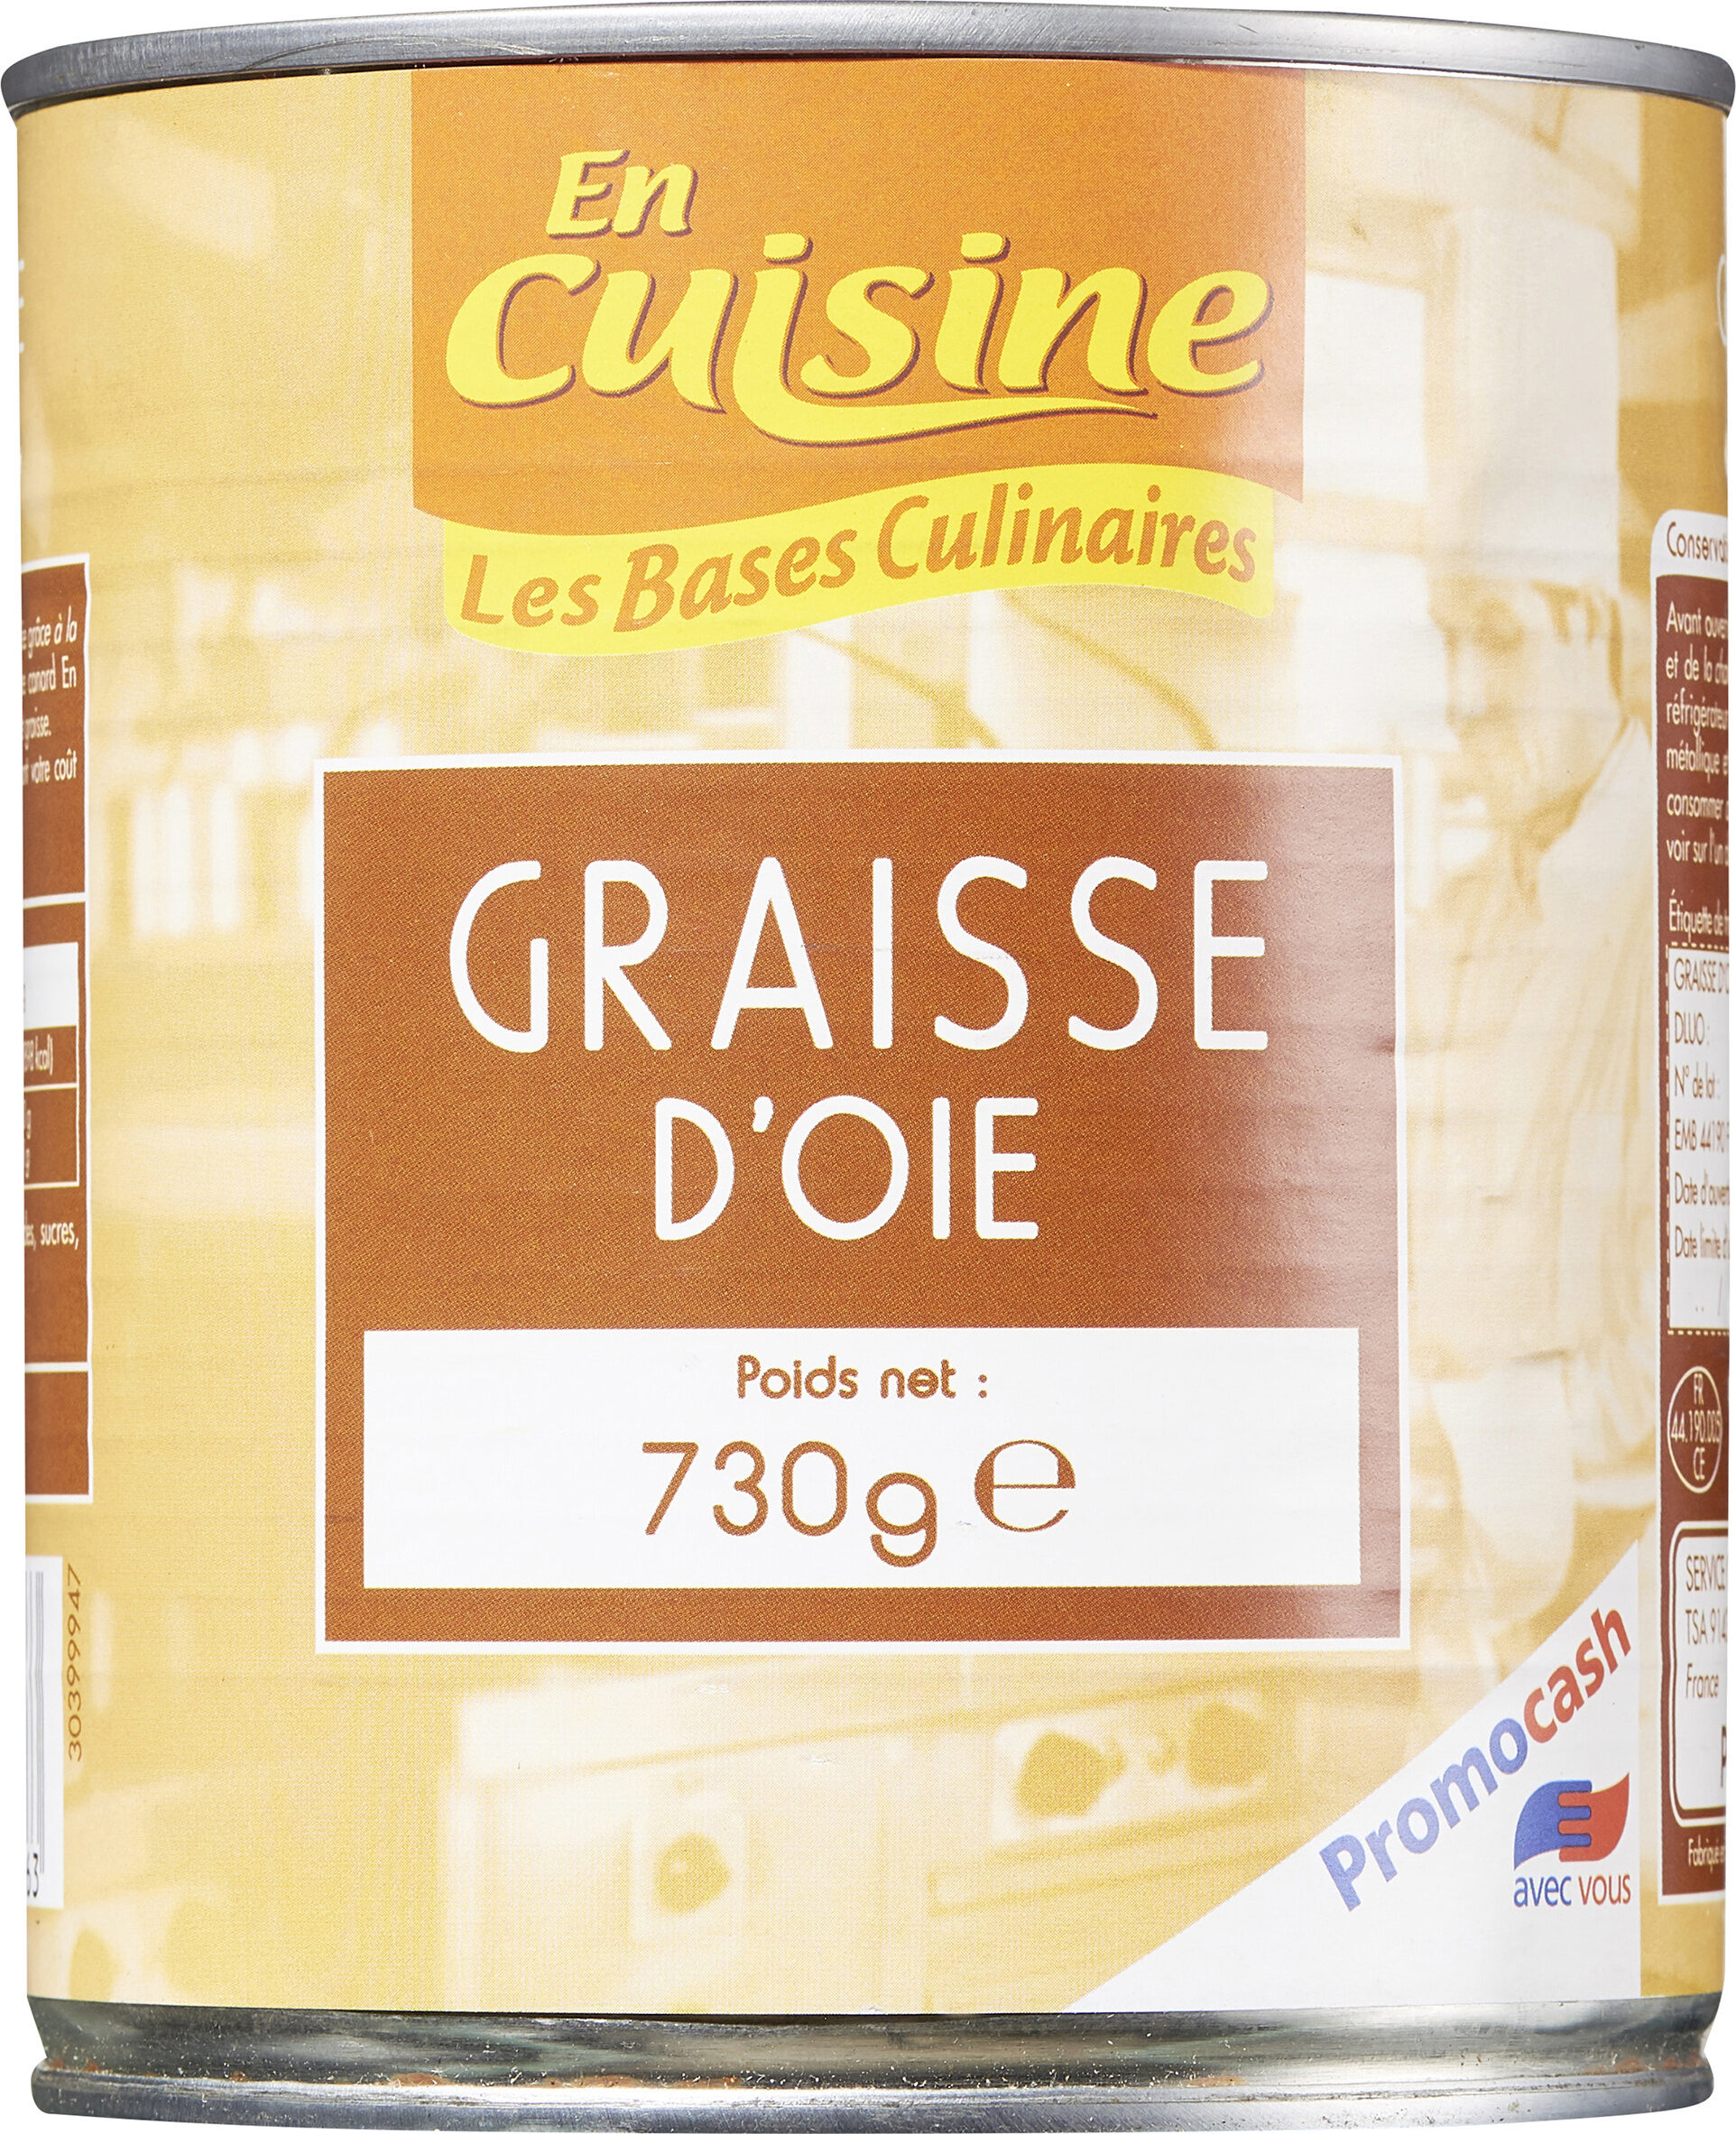 Graisse d'Oie - Product - fr